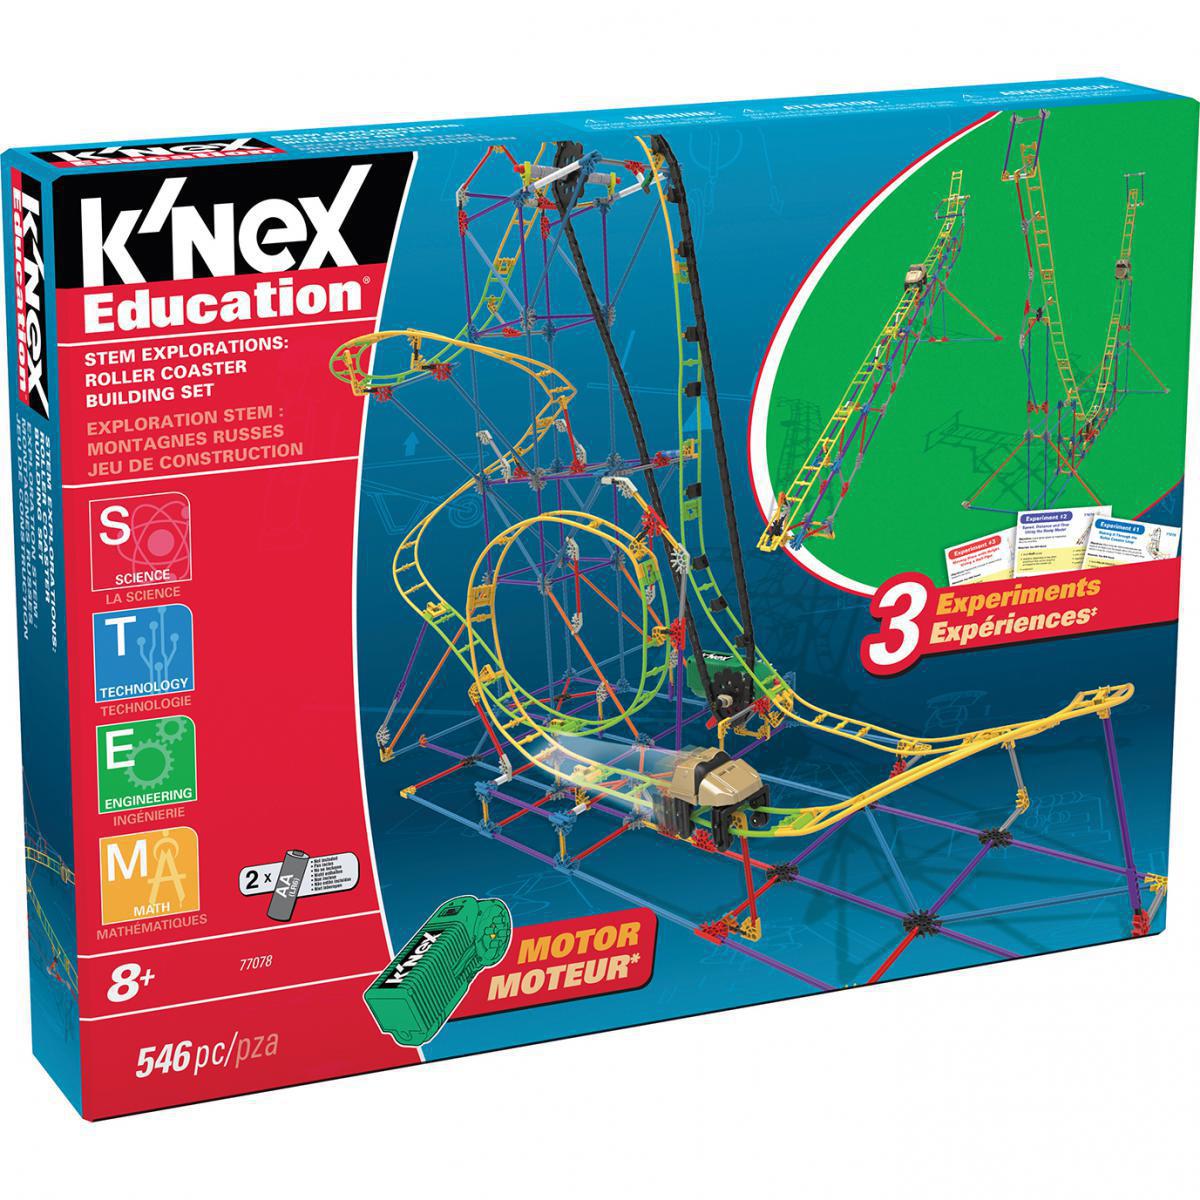  K'Nex® STEM Explorations Roller Coaster Building Set 